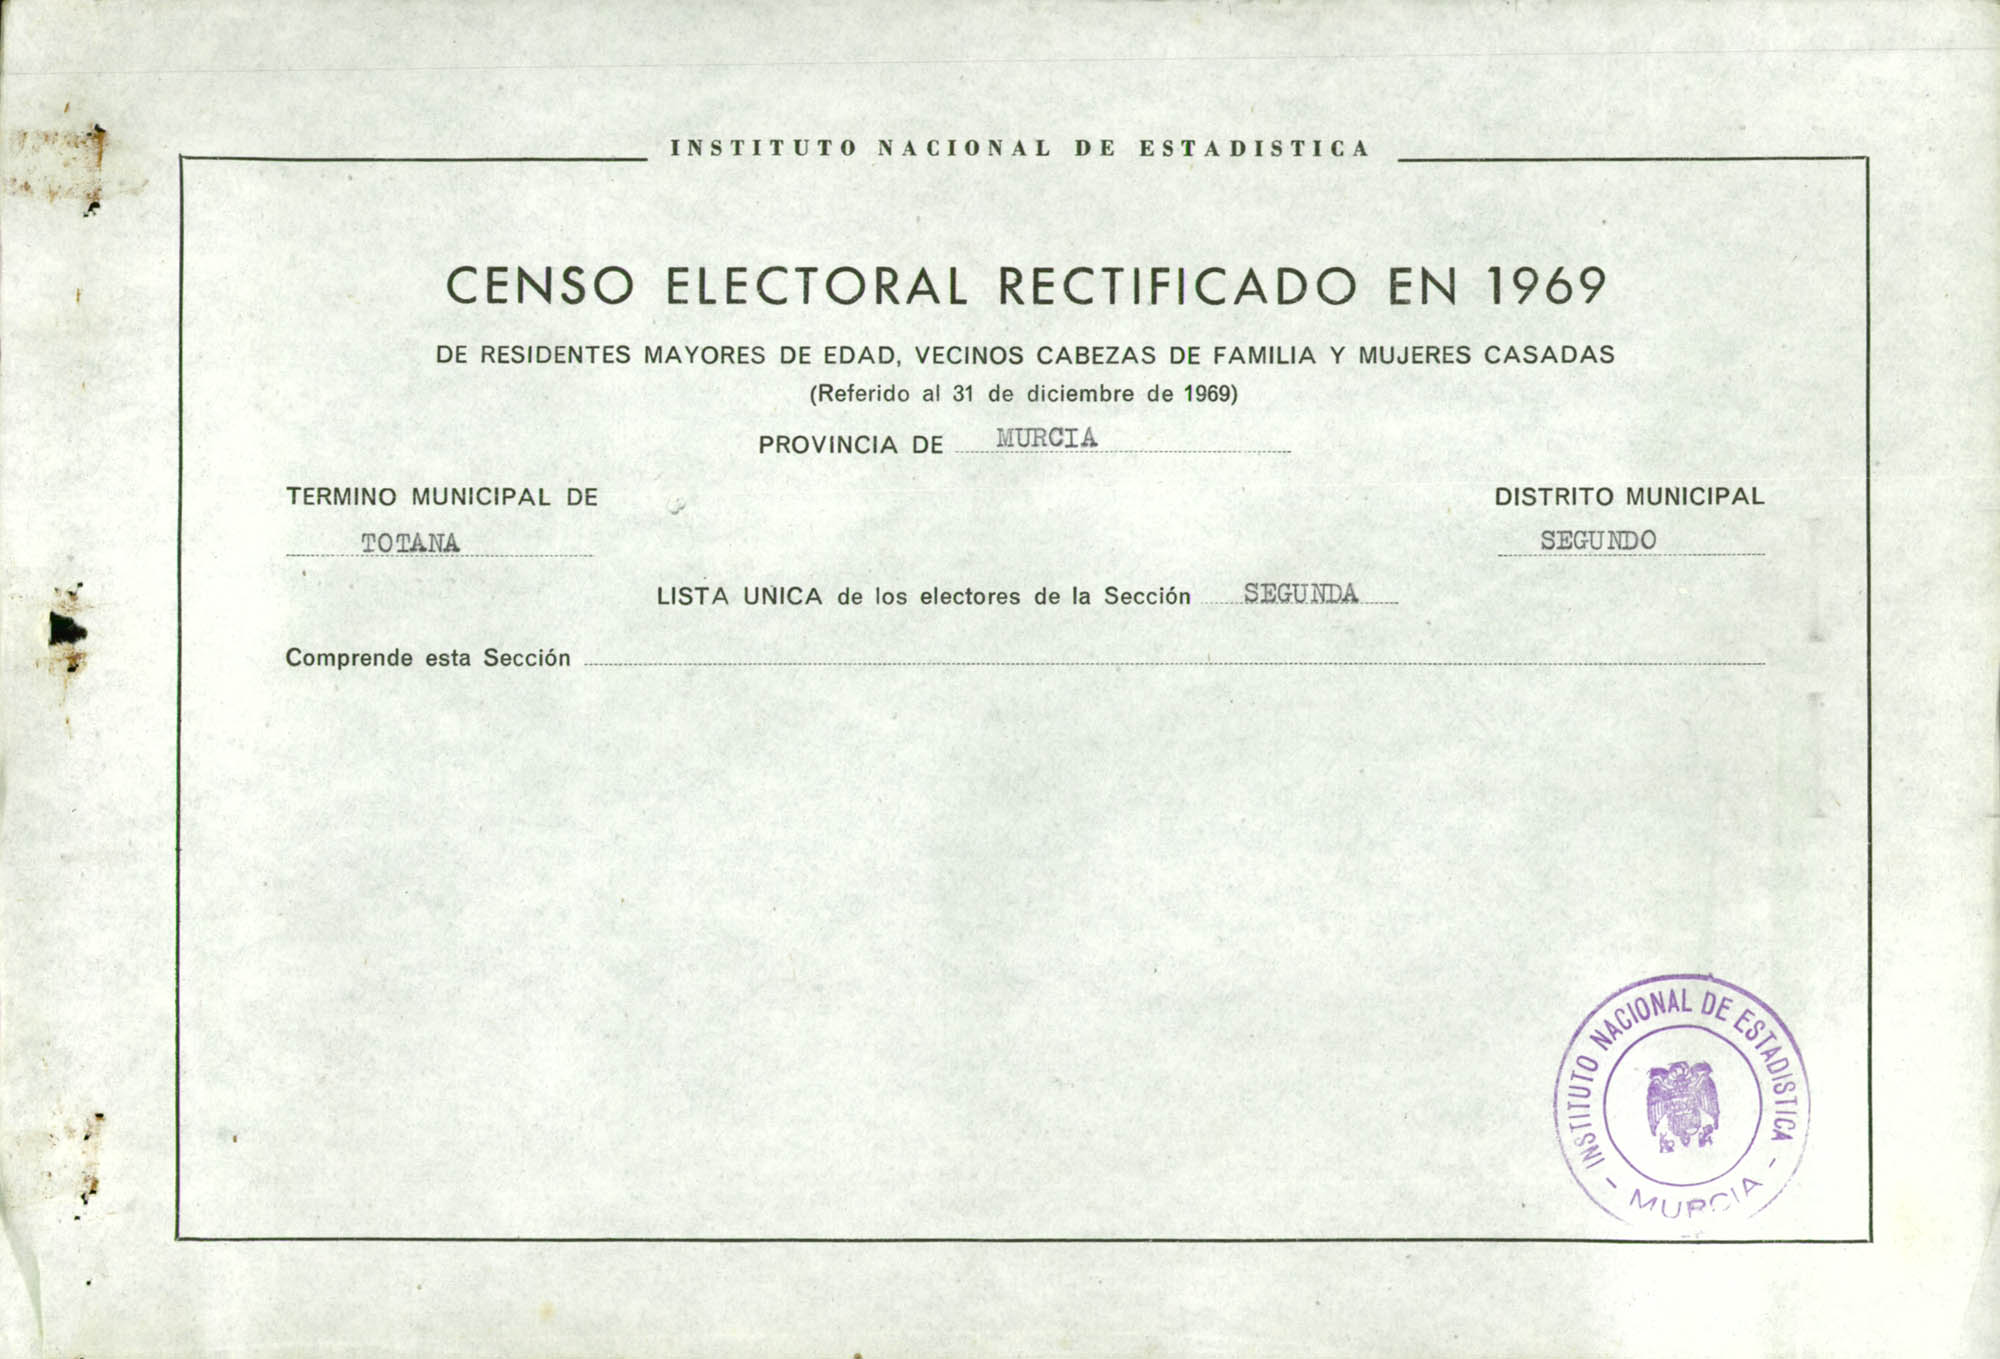 Censo electoral rectificado en 1969: listas definitivas de Totana, Distrito 2º, sección 2ª.